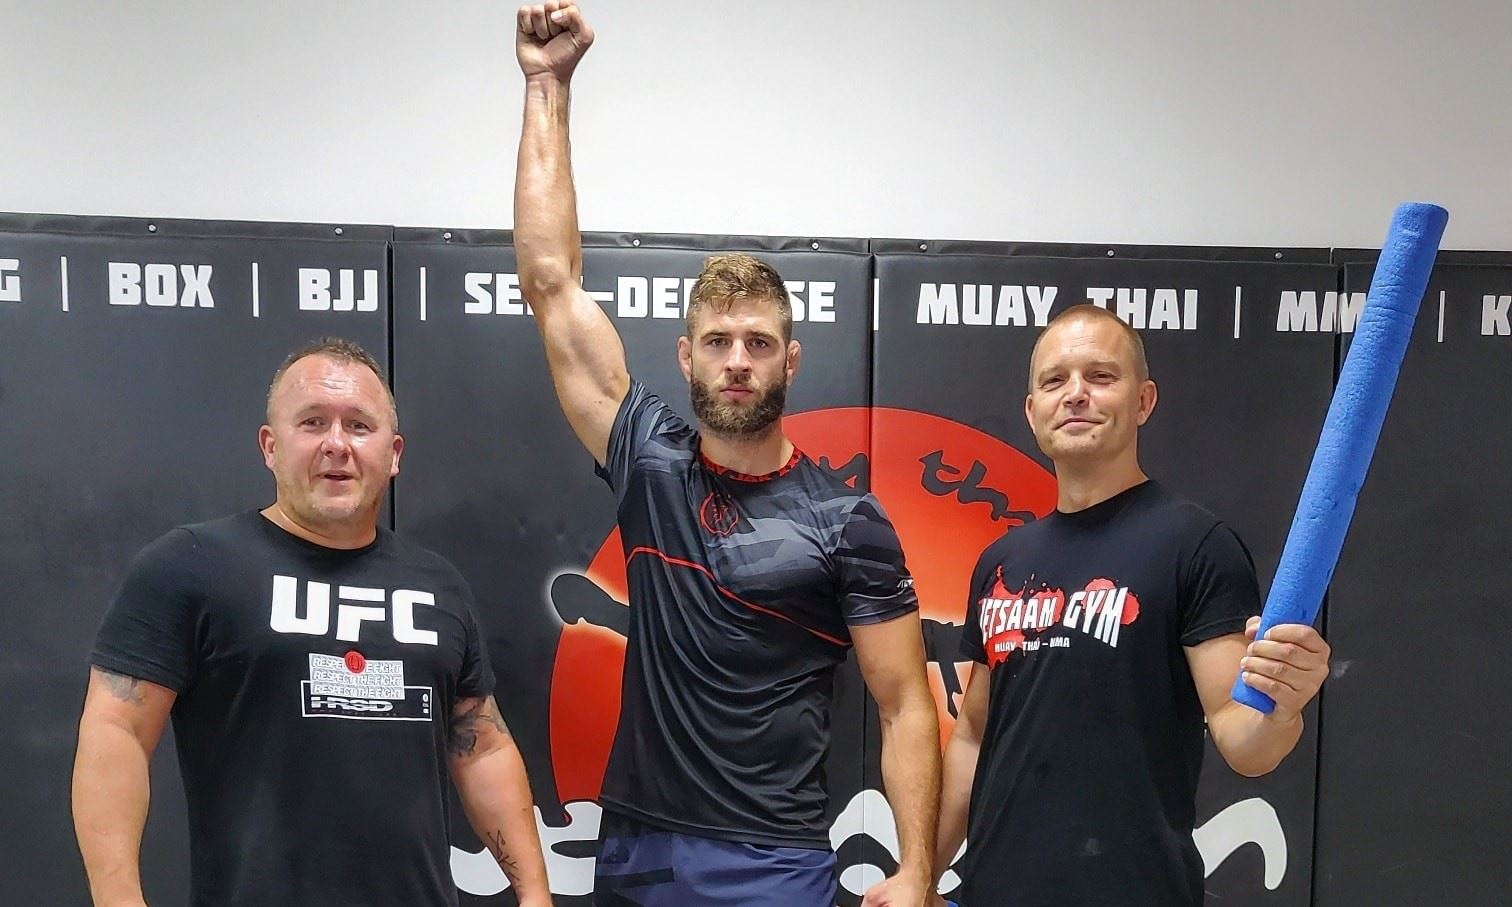 Jaroslav Hovězák, Jiří Procházka a Martin Karaivanov. Trojka, která zbrojí na UFC.